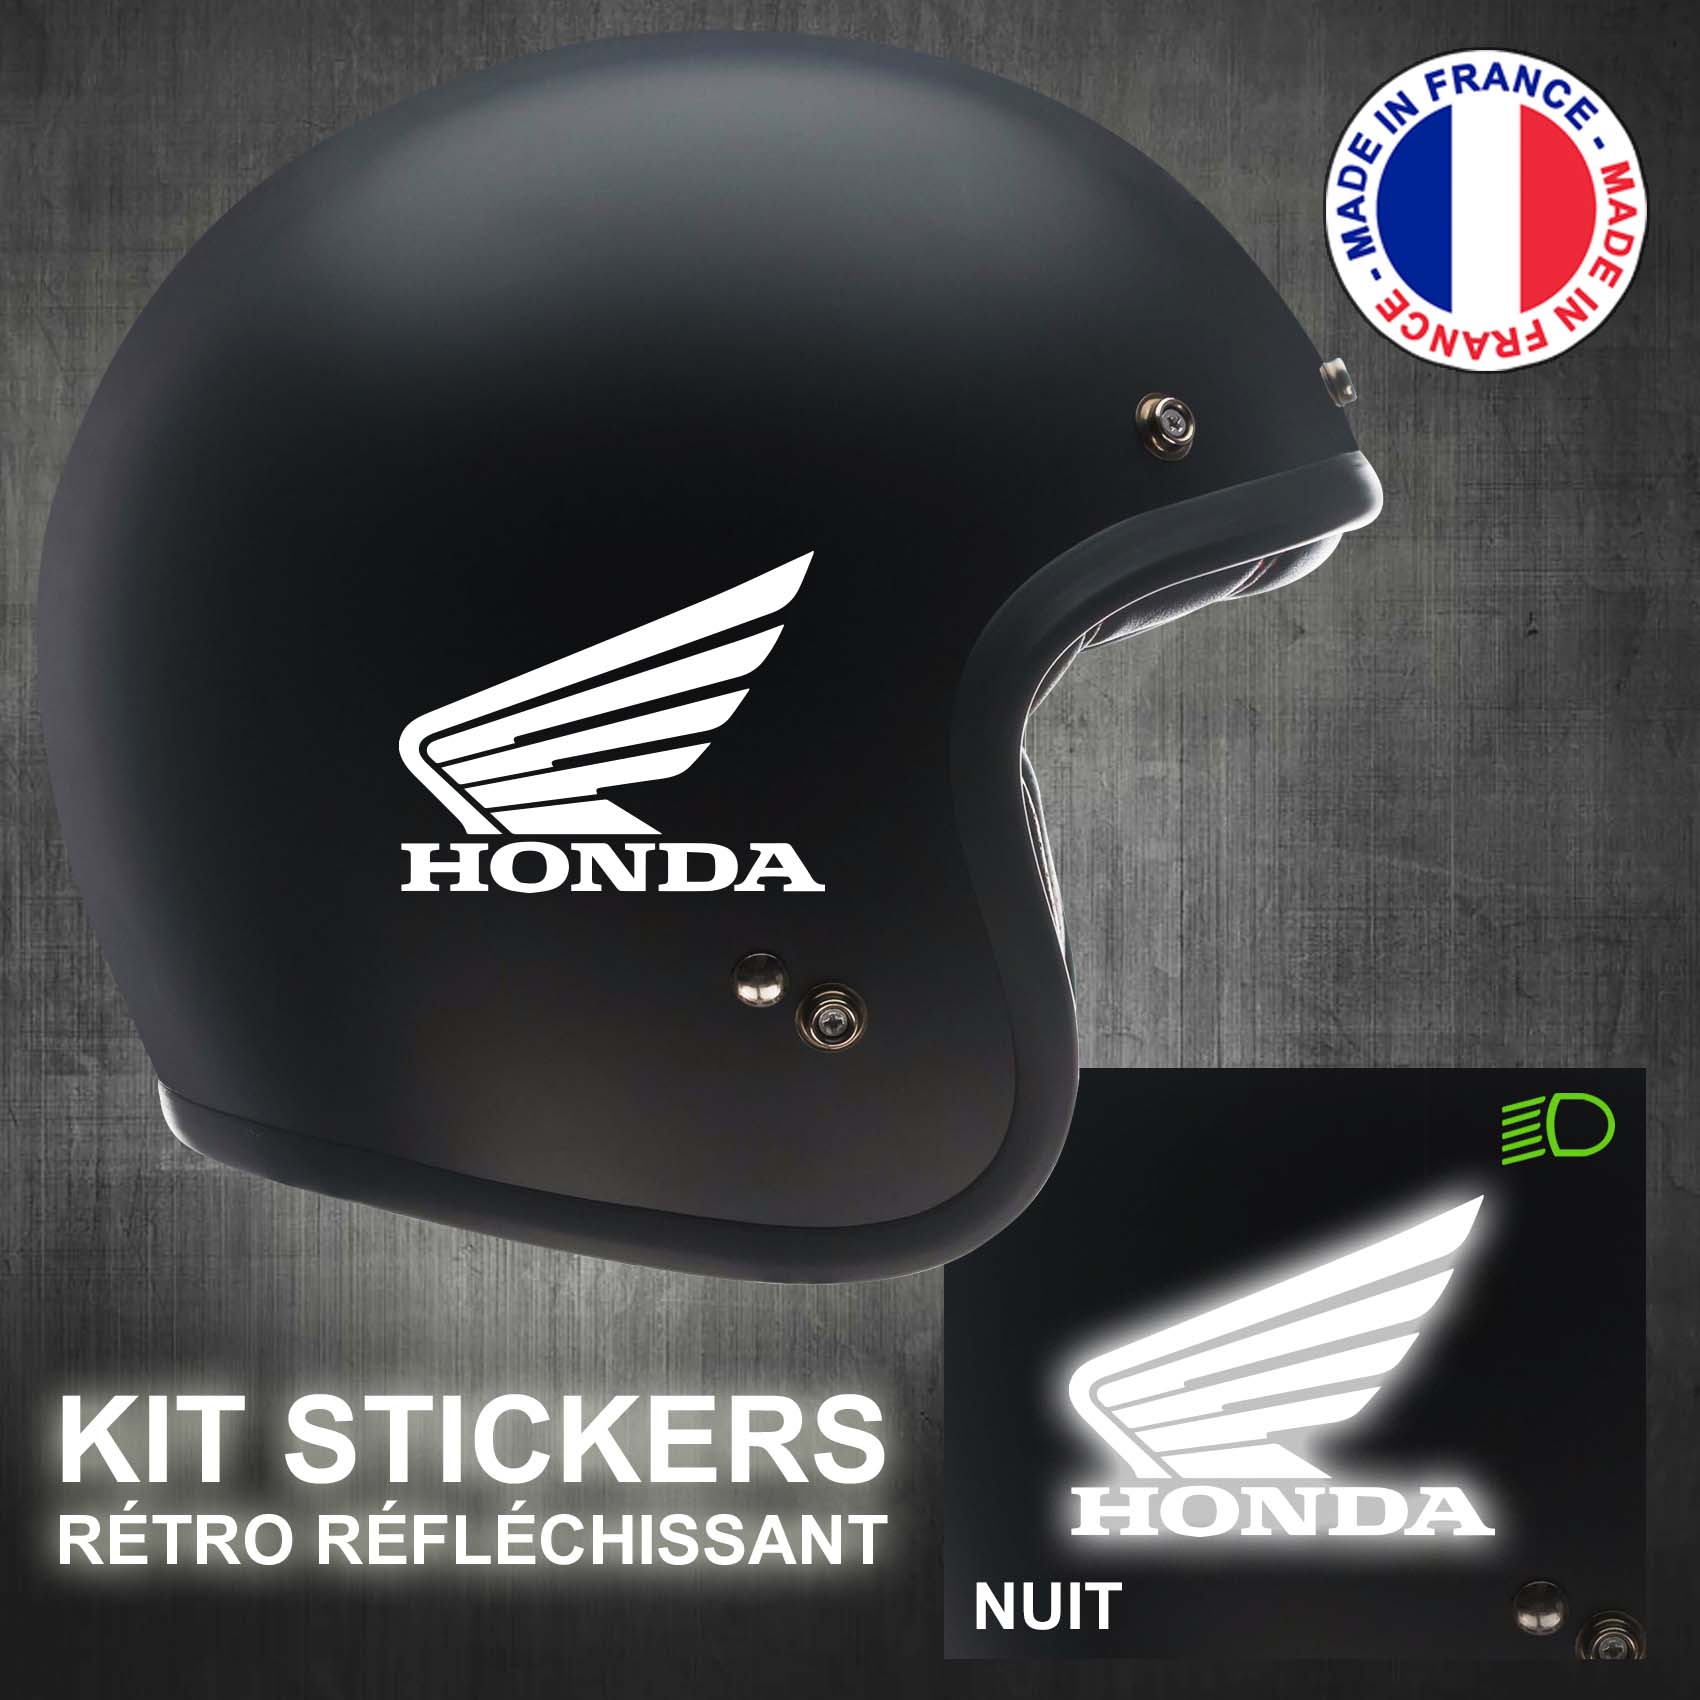 Stickers Casque Moto réfléchissants Honda - Stick-attack